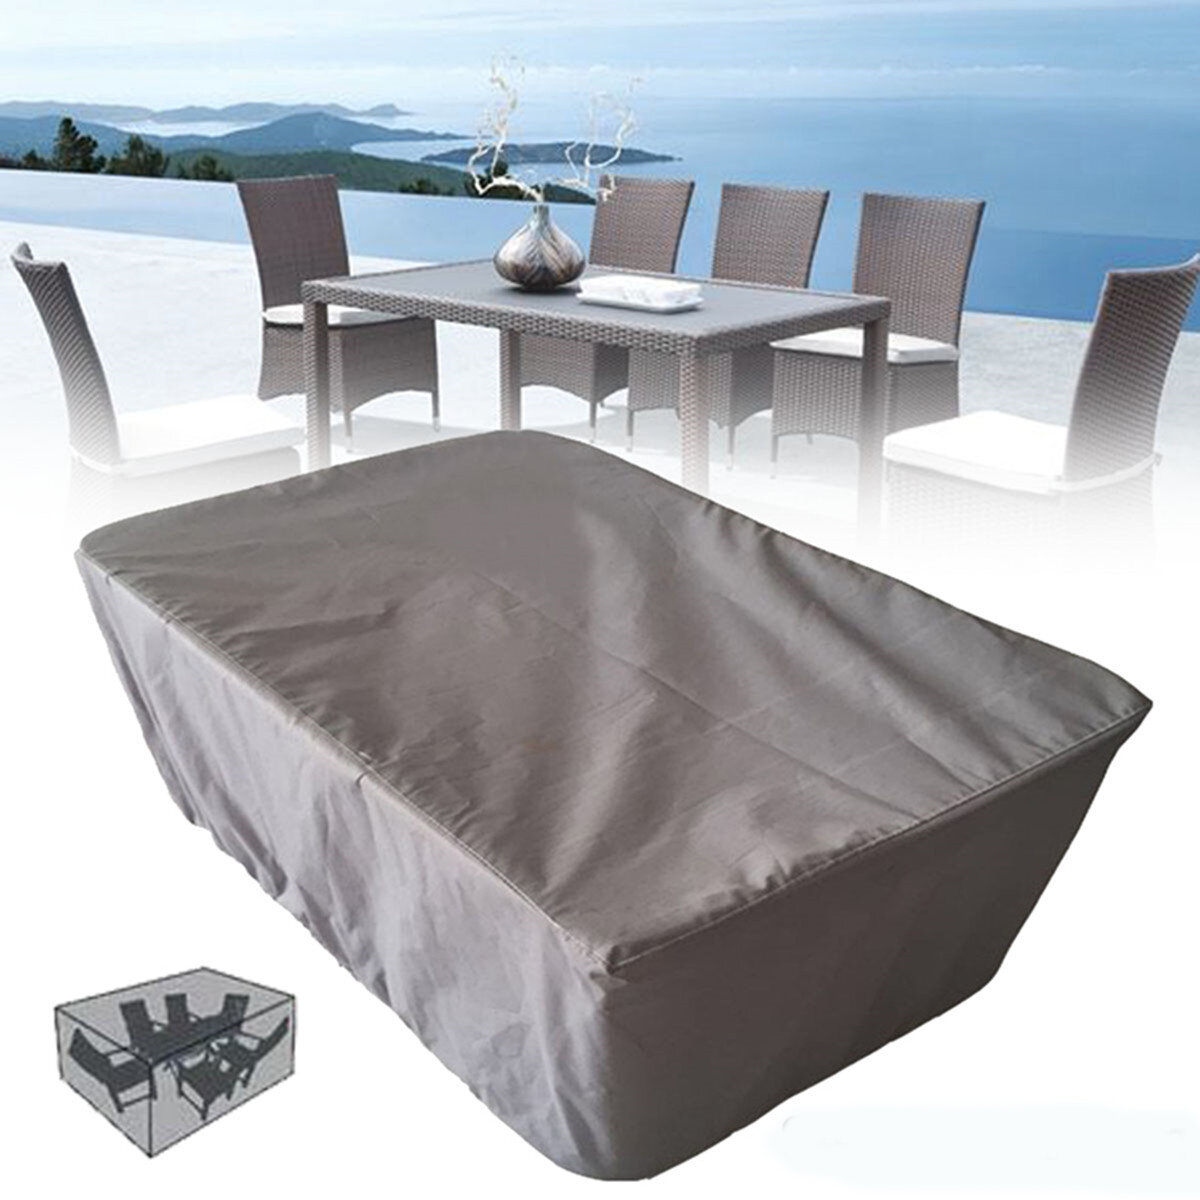 Housse imperméable pour table de jardin de 200x160x94CM, protection contre la poussière et les intempéries pour les meubles d'extérieur.